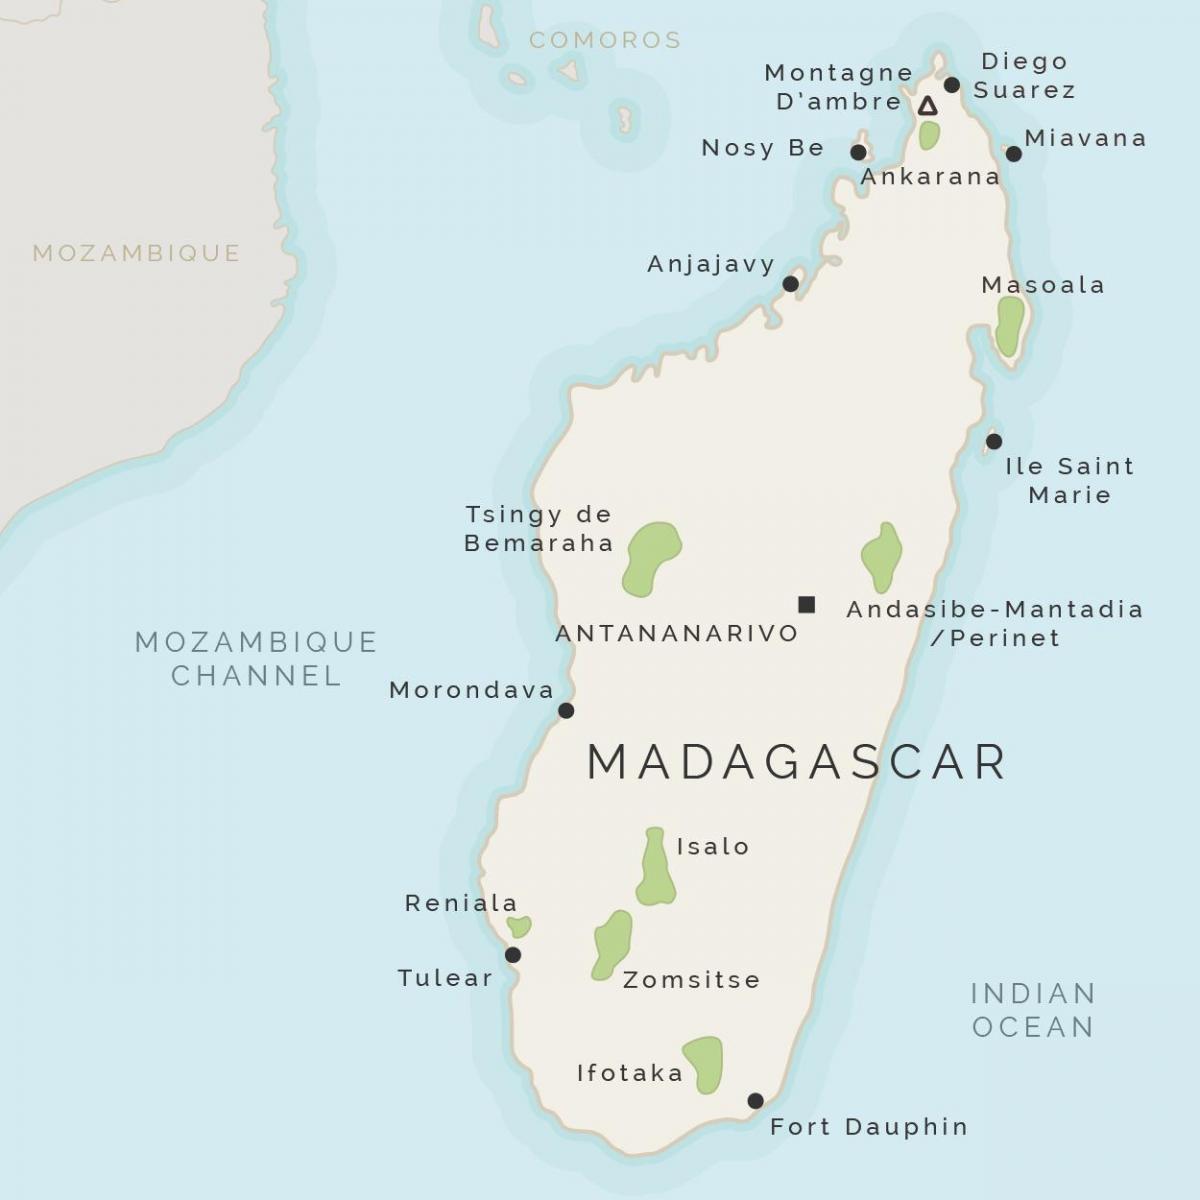 מפה של מדגסקר ואיים שמסביב